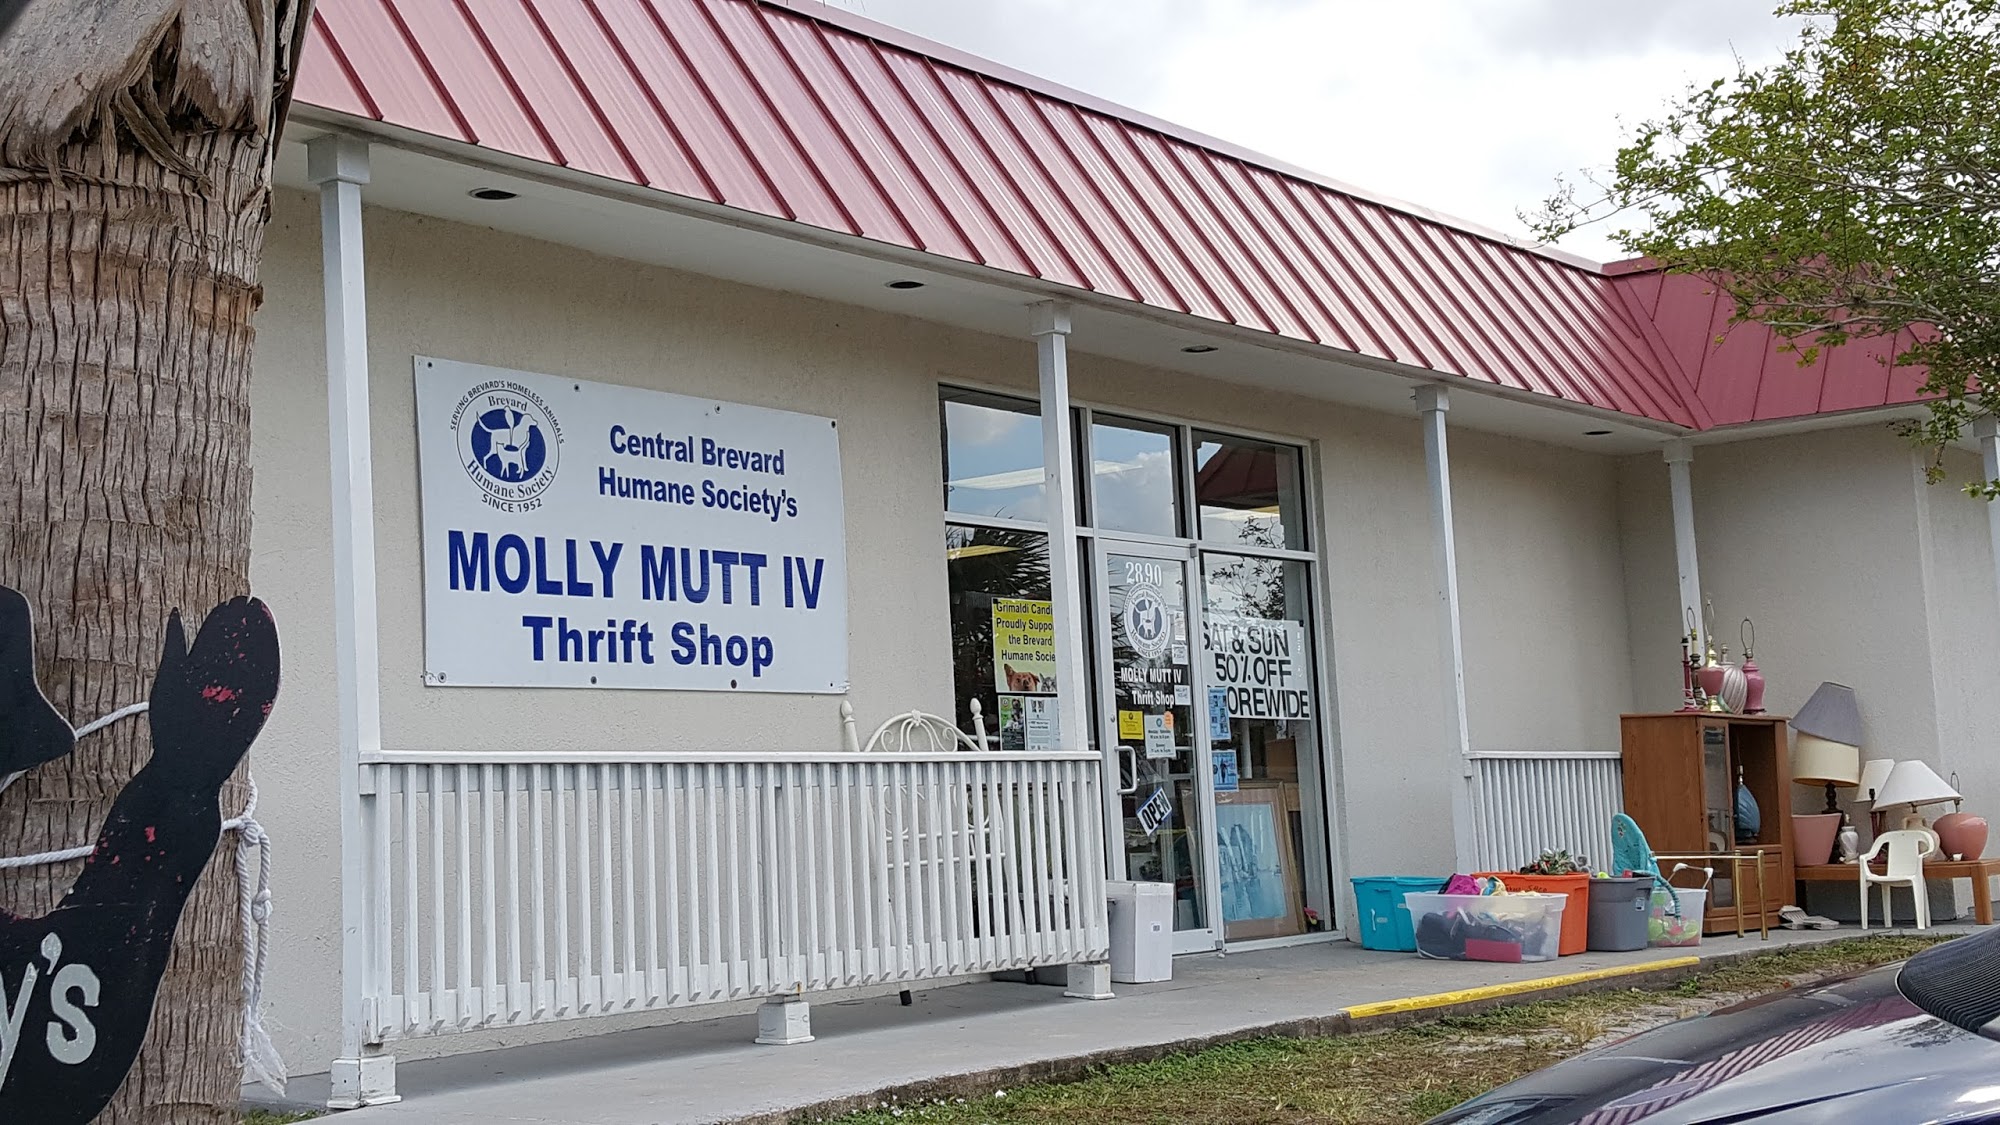 Molly Mutt IV Thrift Shop